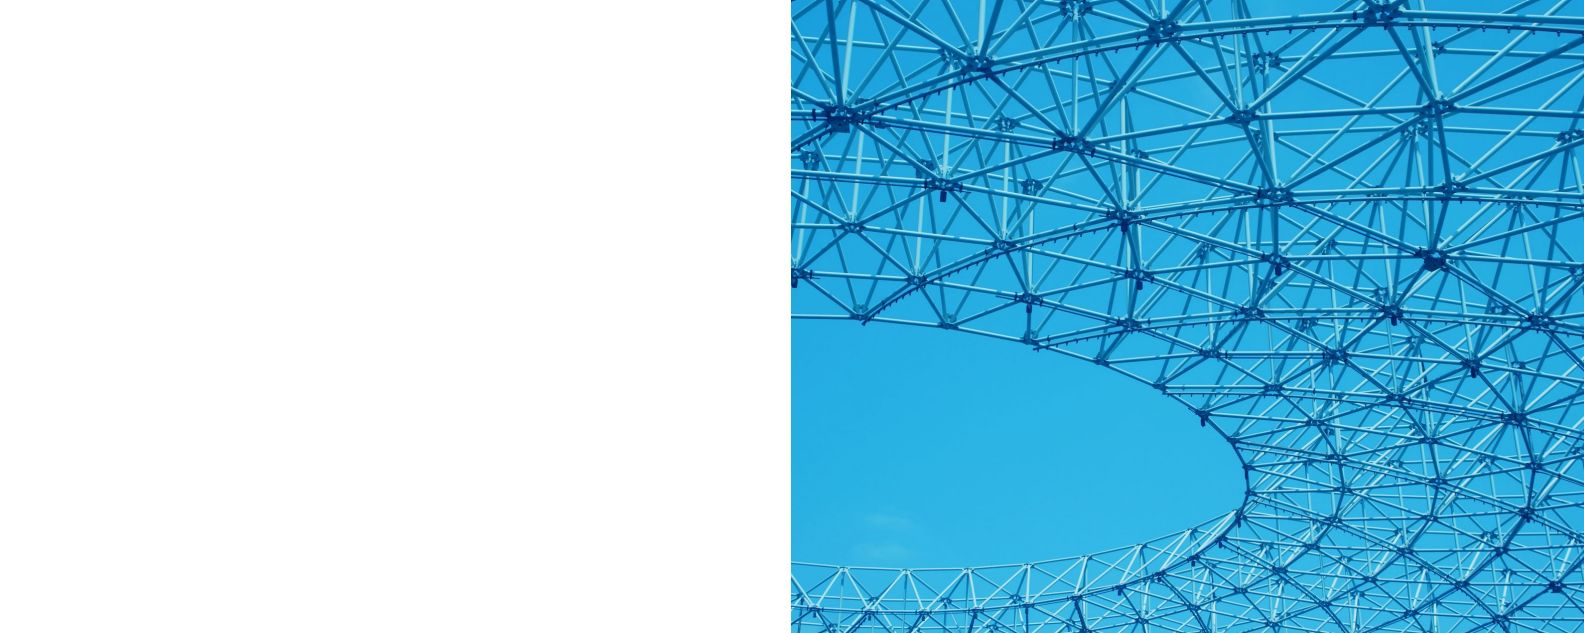 Un primo piano di una struttura in metallo a spirale con un cielo azzurro sullo sfondo